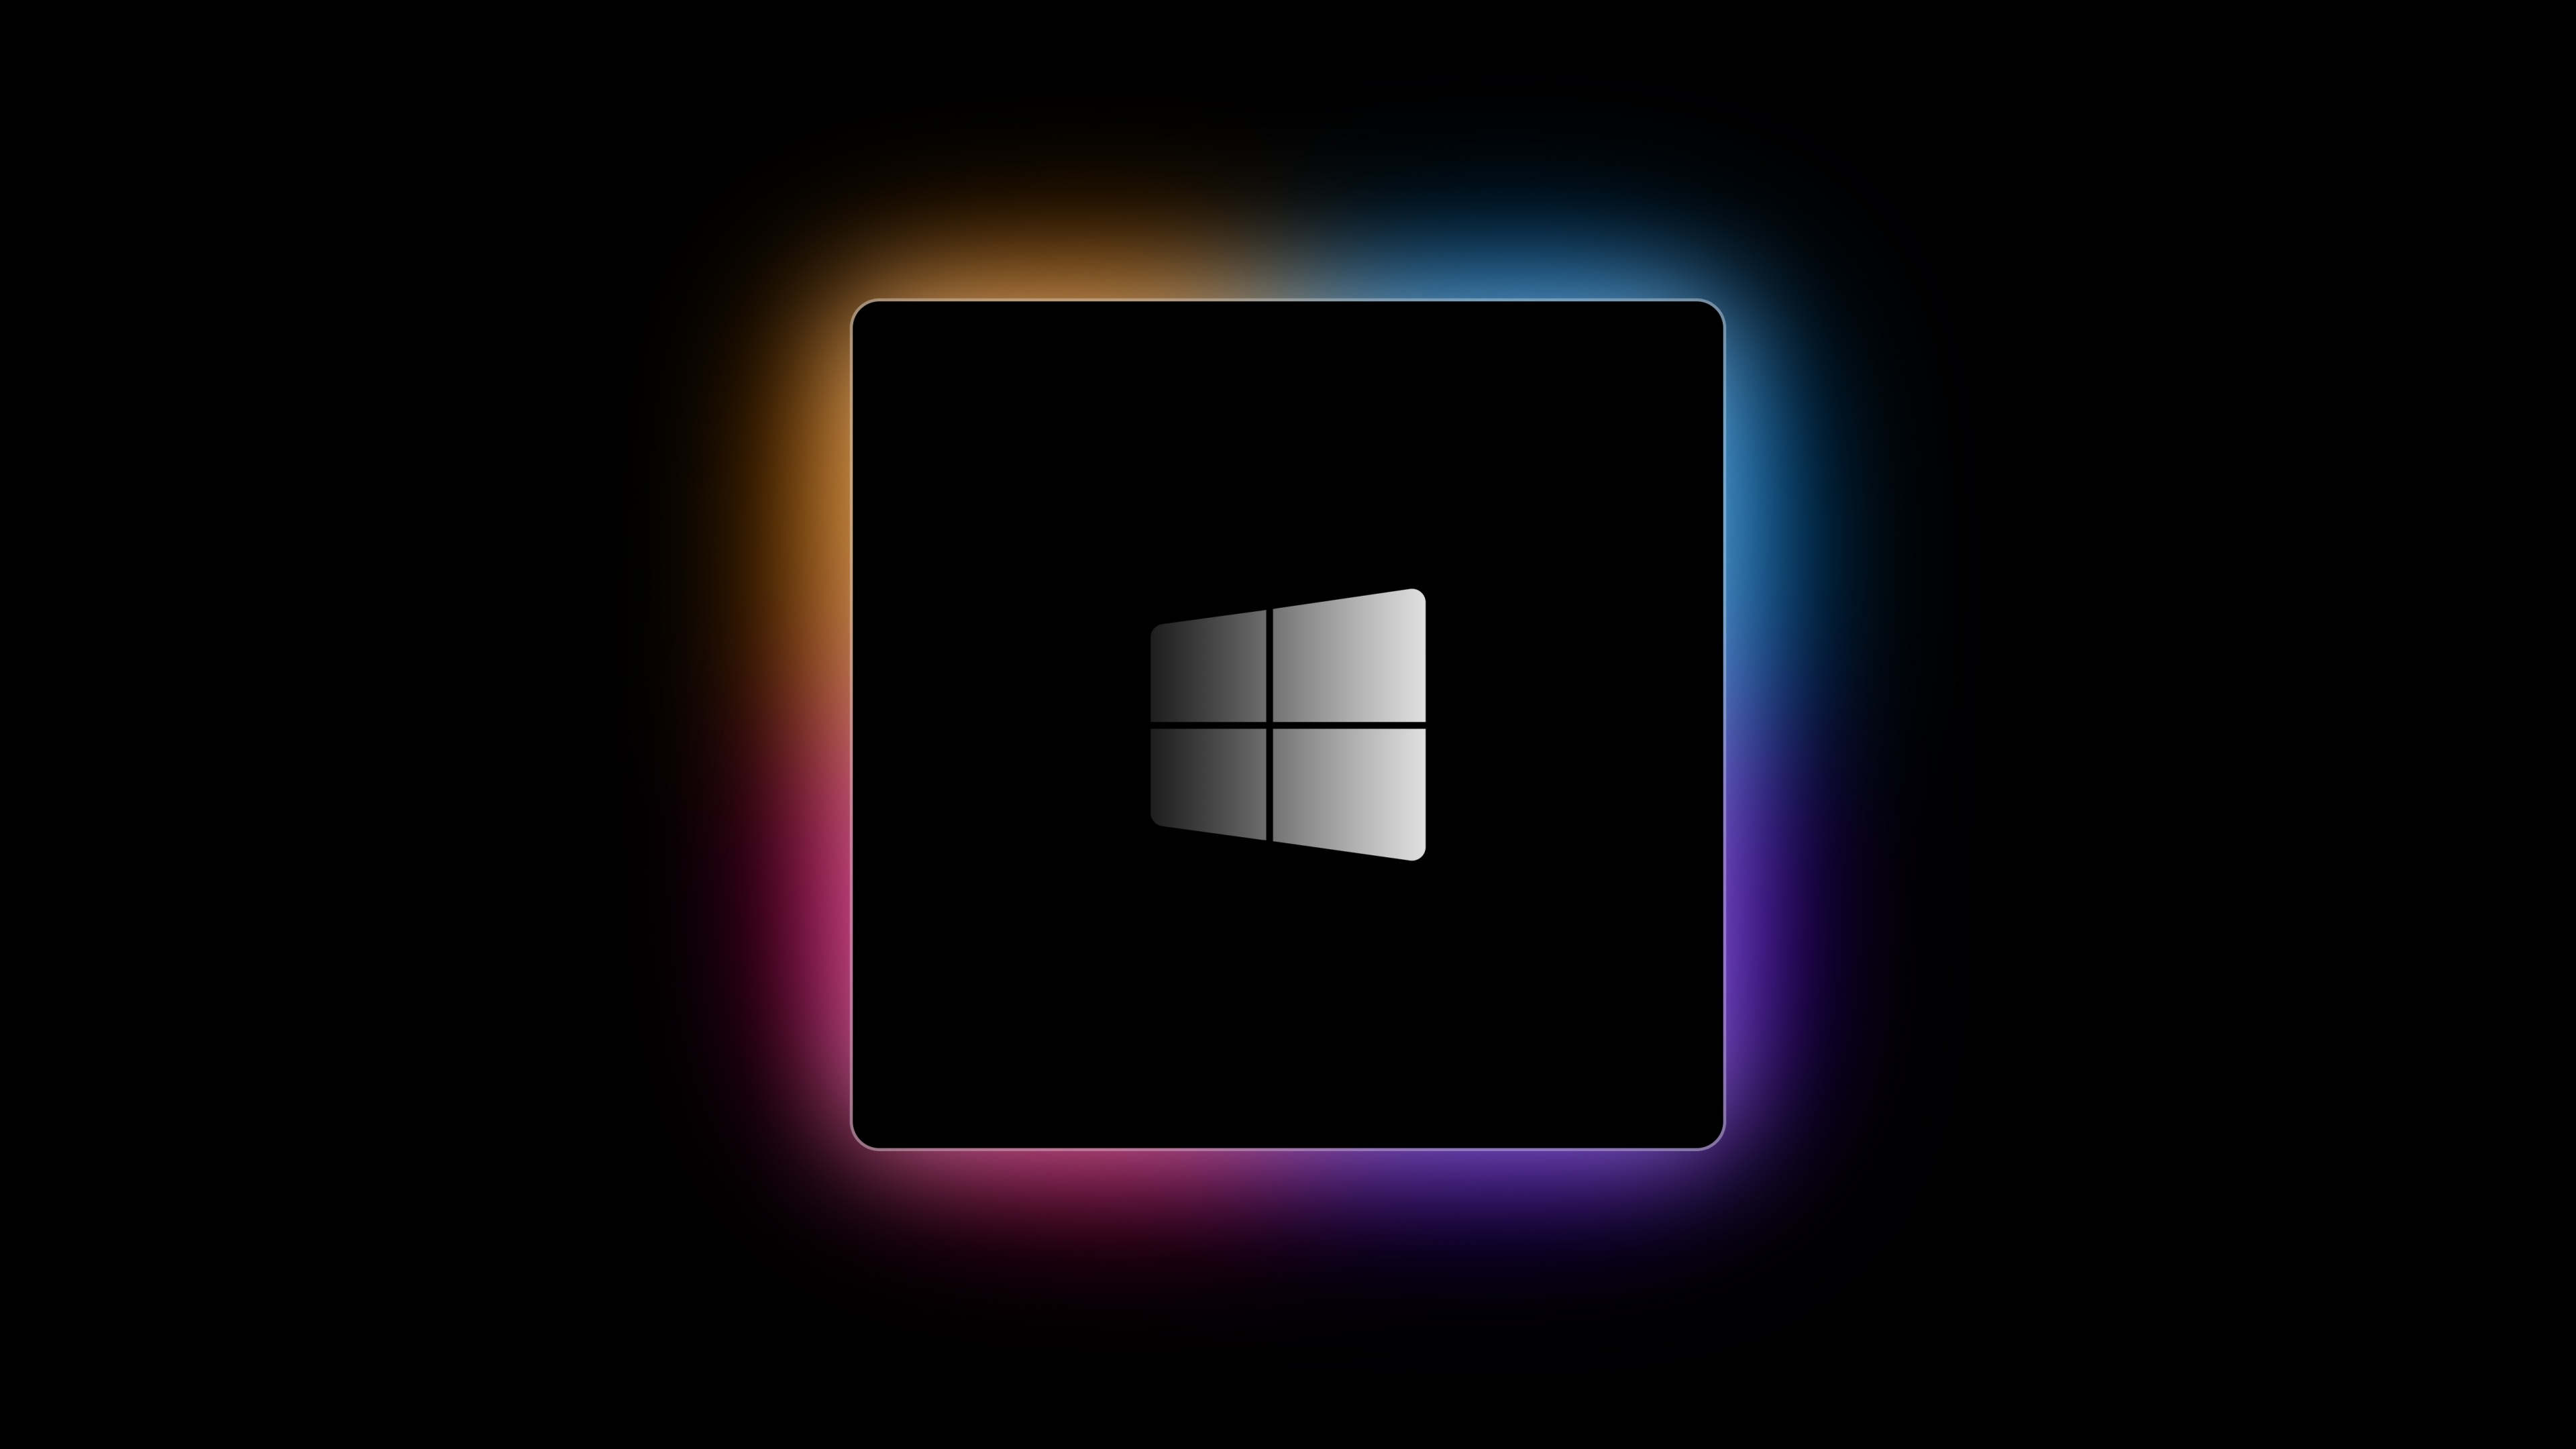 Hãy thưởng thức đường cong chữ viết đầy tinh tế và phần mềm đột phá của Windows với hình nền Windows logo sắc nét.